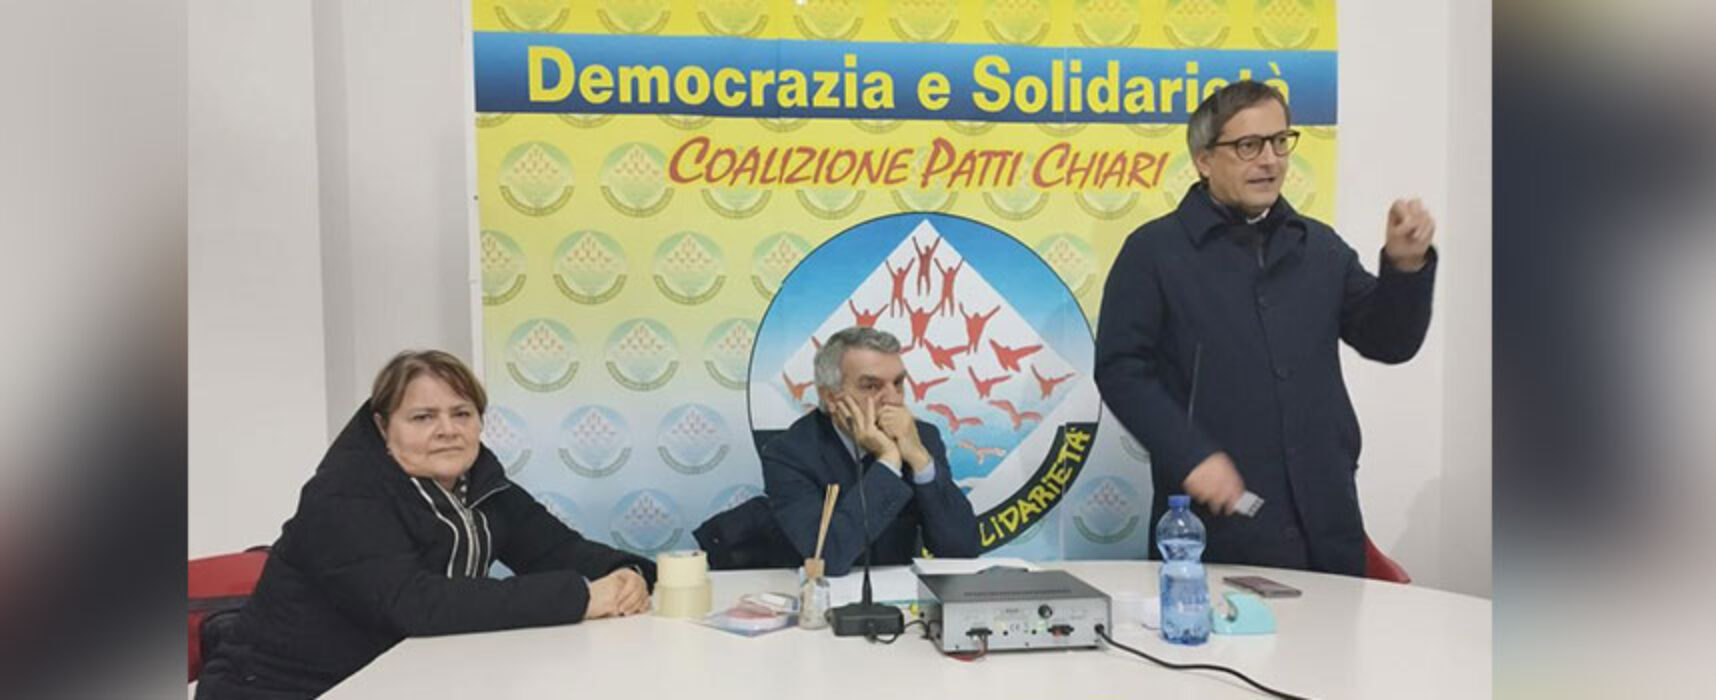 Coalizione Patti Chiari ufficializza sostegno a ricandidatura Sindaco Angarano